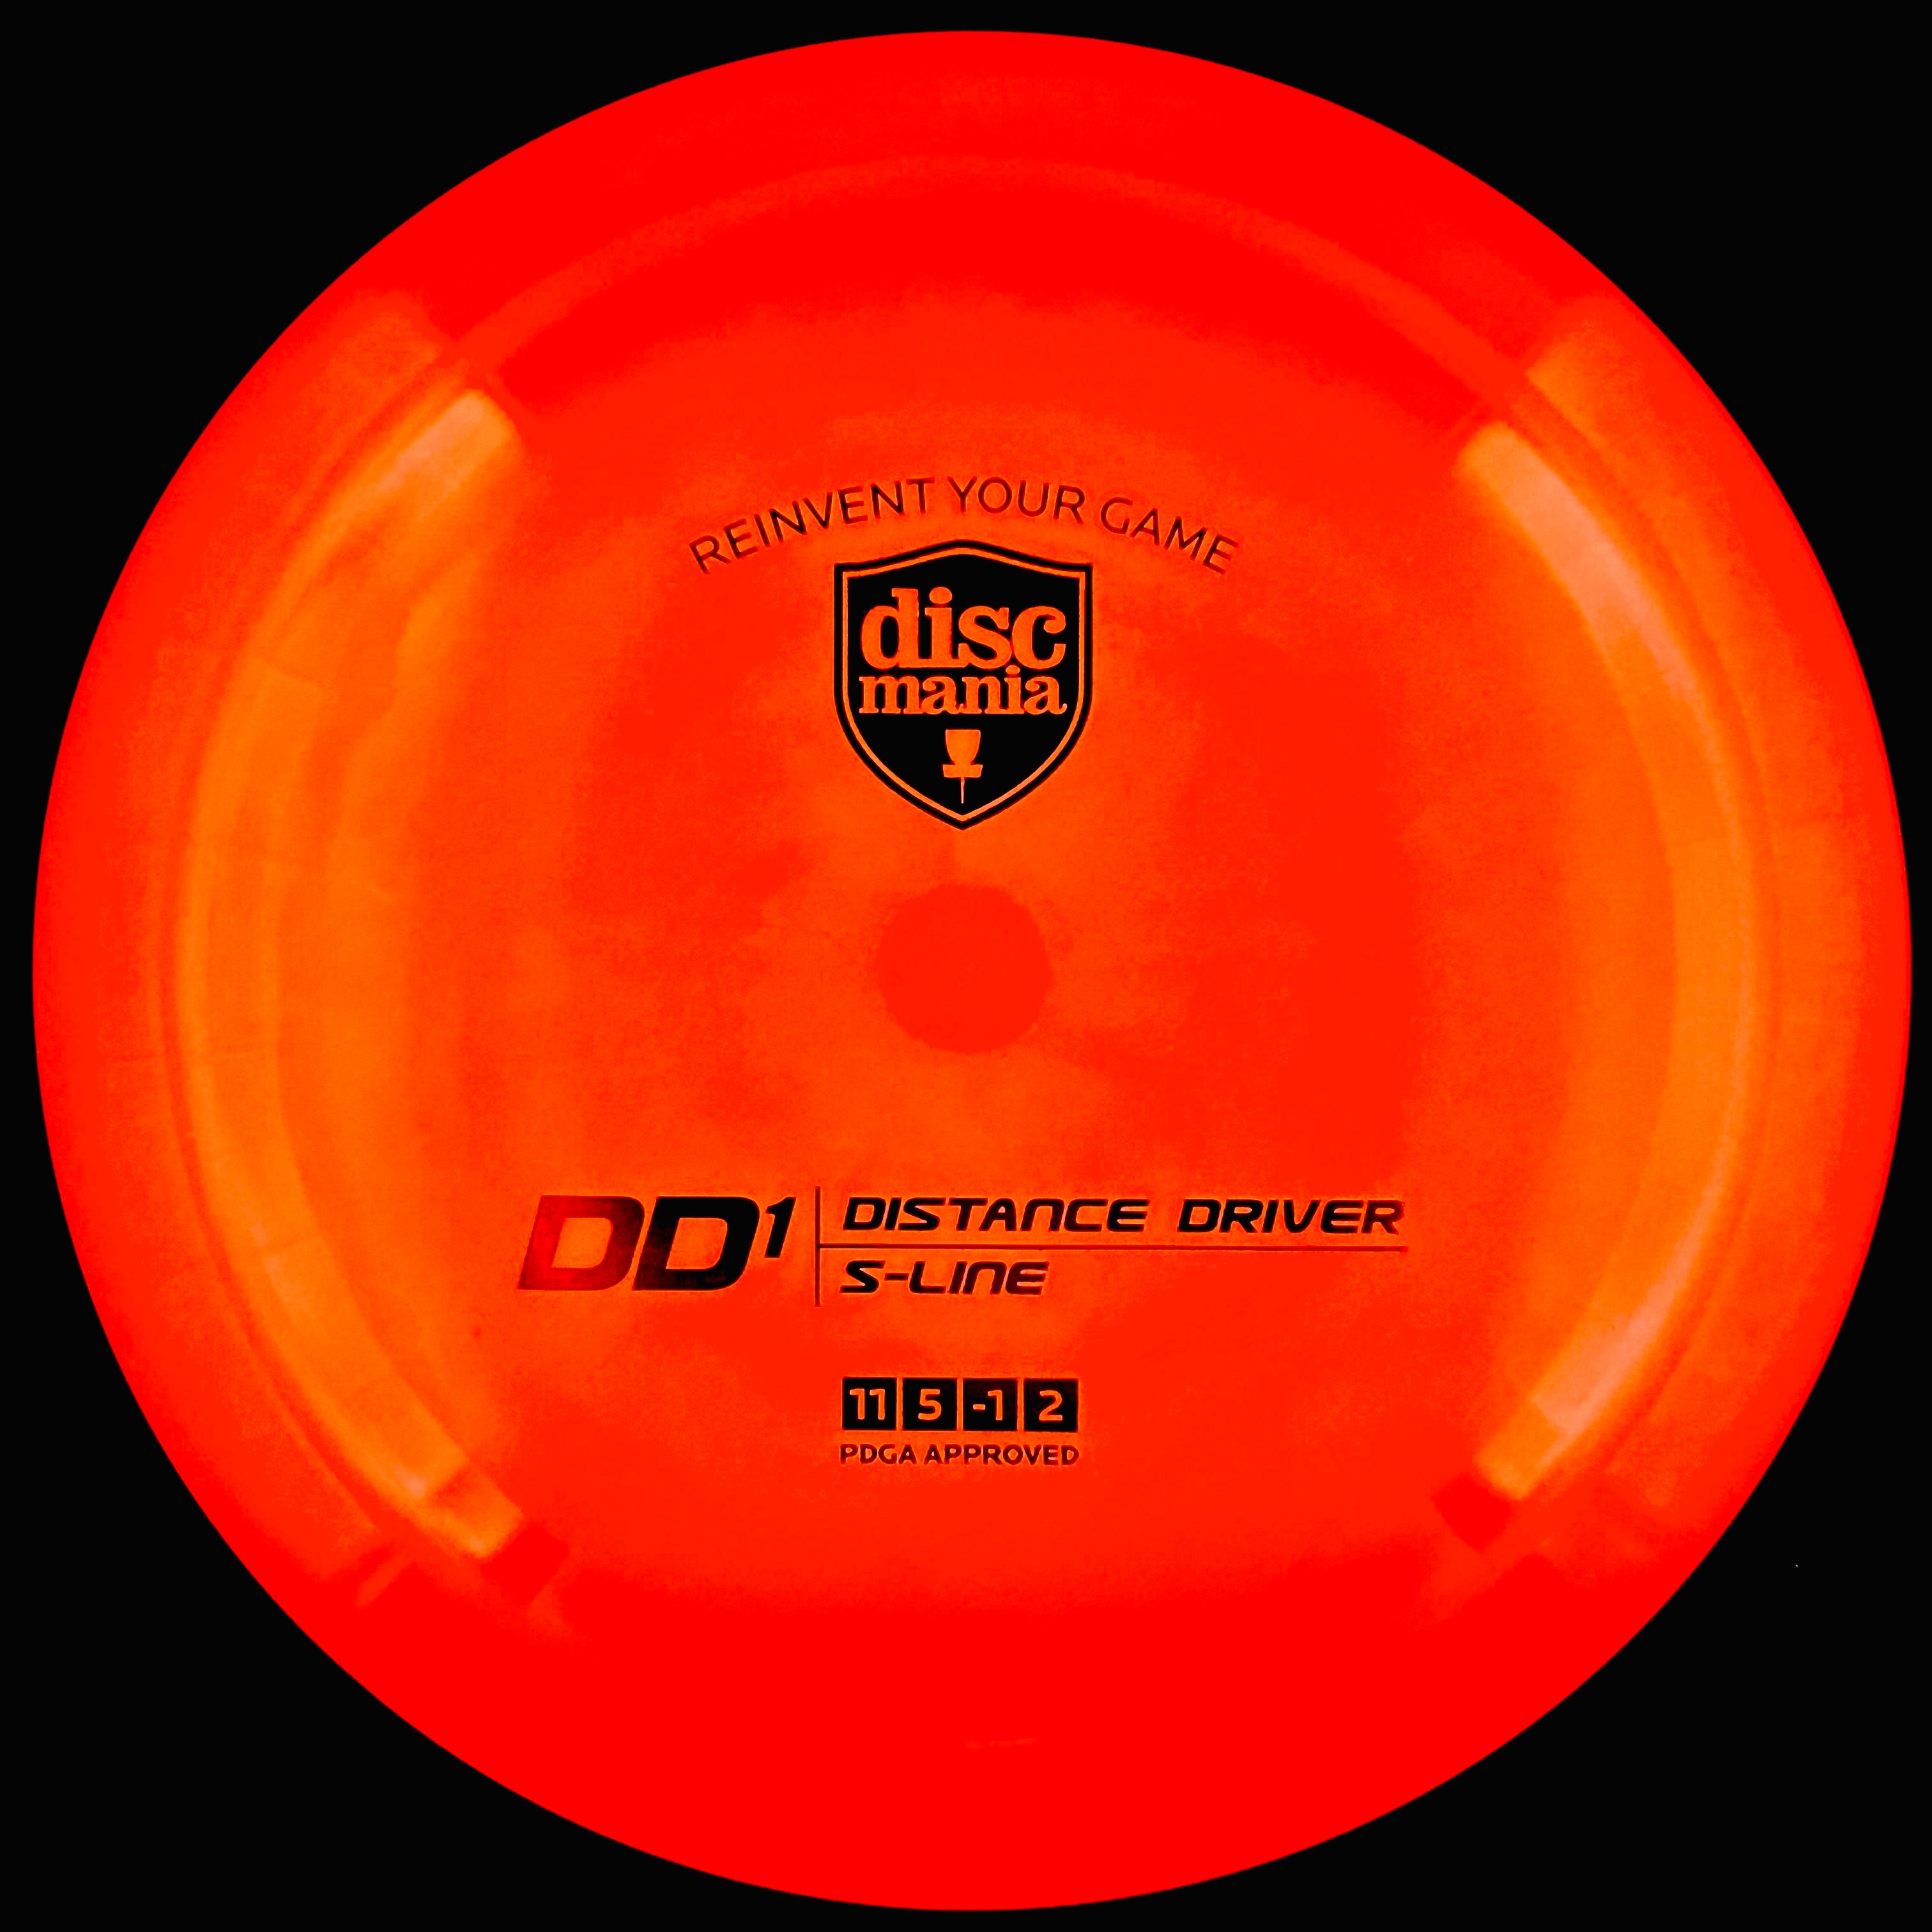 Discmania S-Line DD1 (Distance Driver)